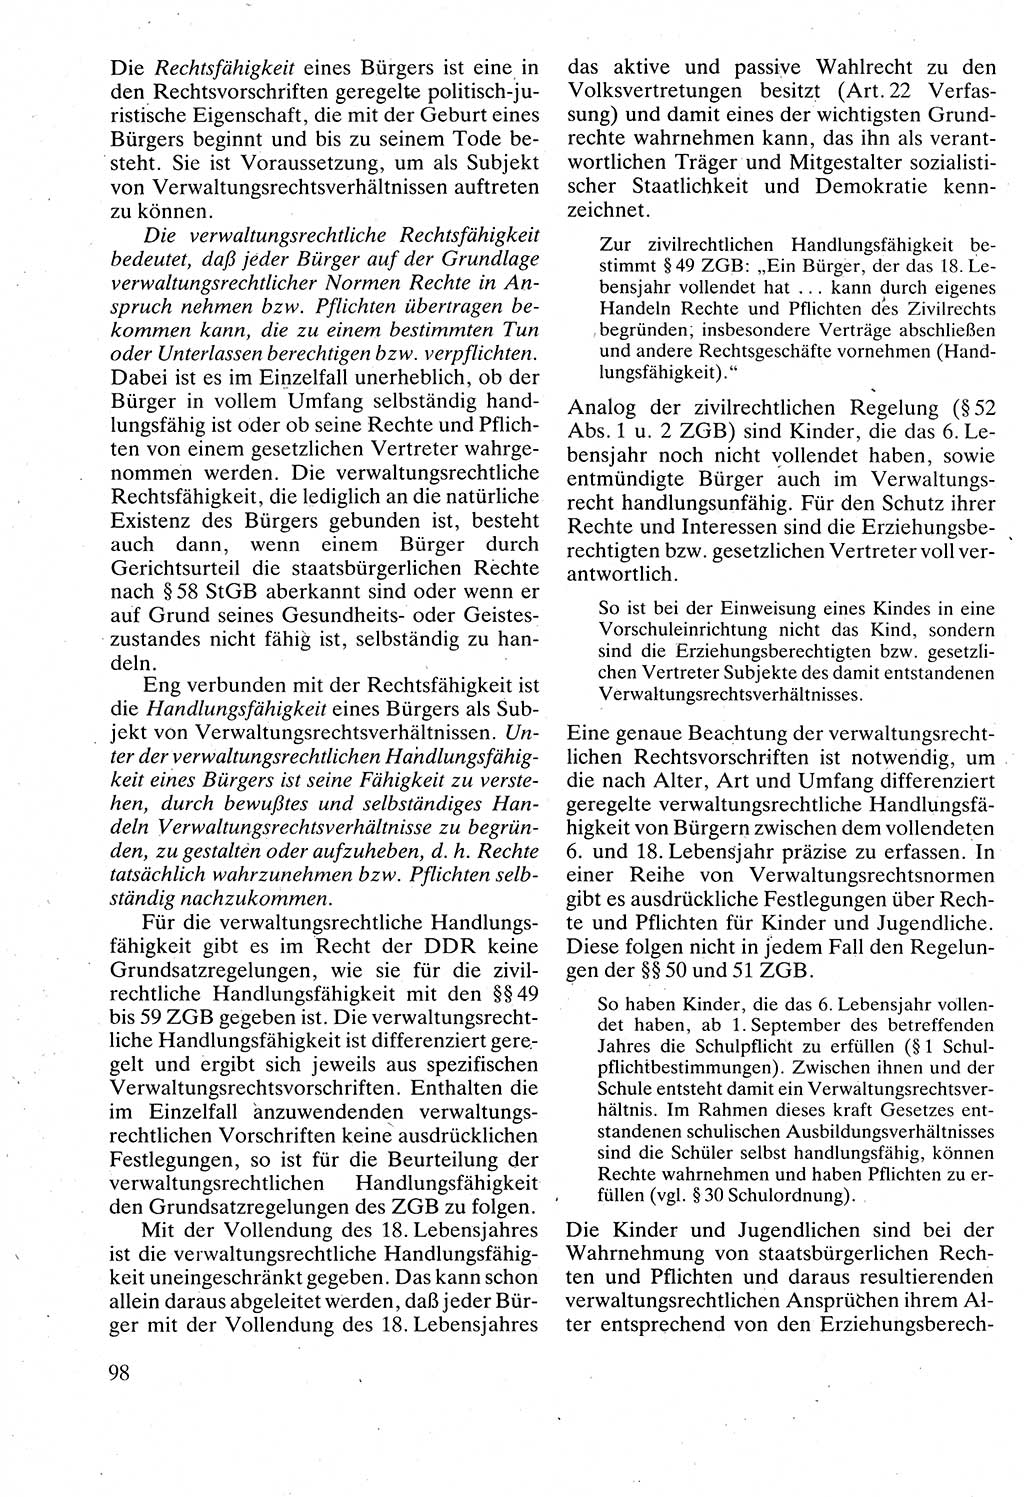 Verwaltungsrecht [Deutsche Demokratische Republik (DDR)], Lehrbuch 1988, Seite 98 (Verw.-R. DDR Lb. 1988, S. 98)